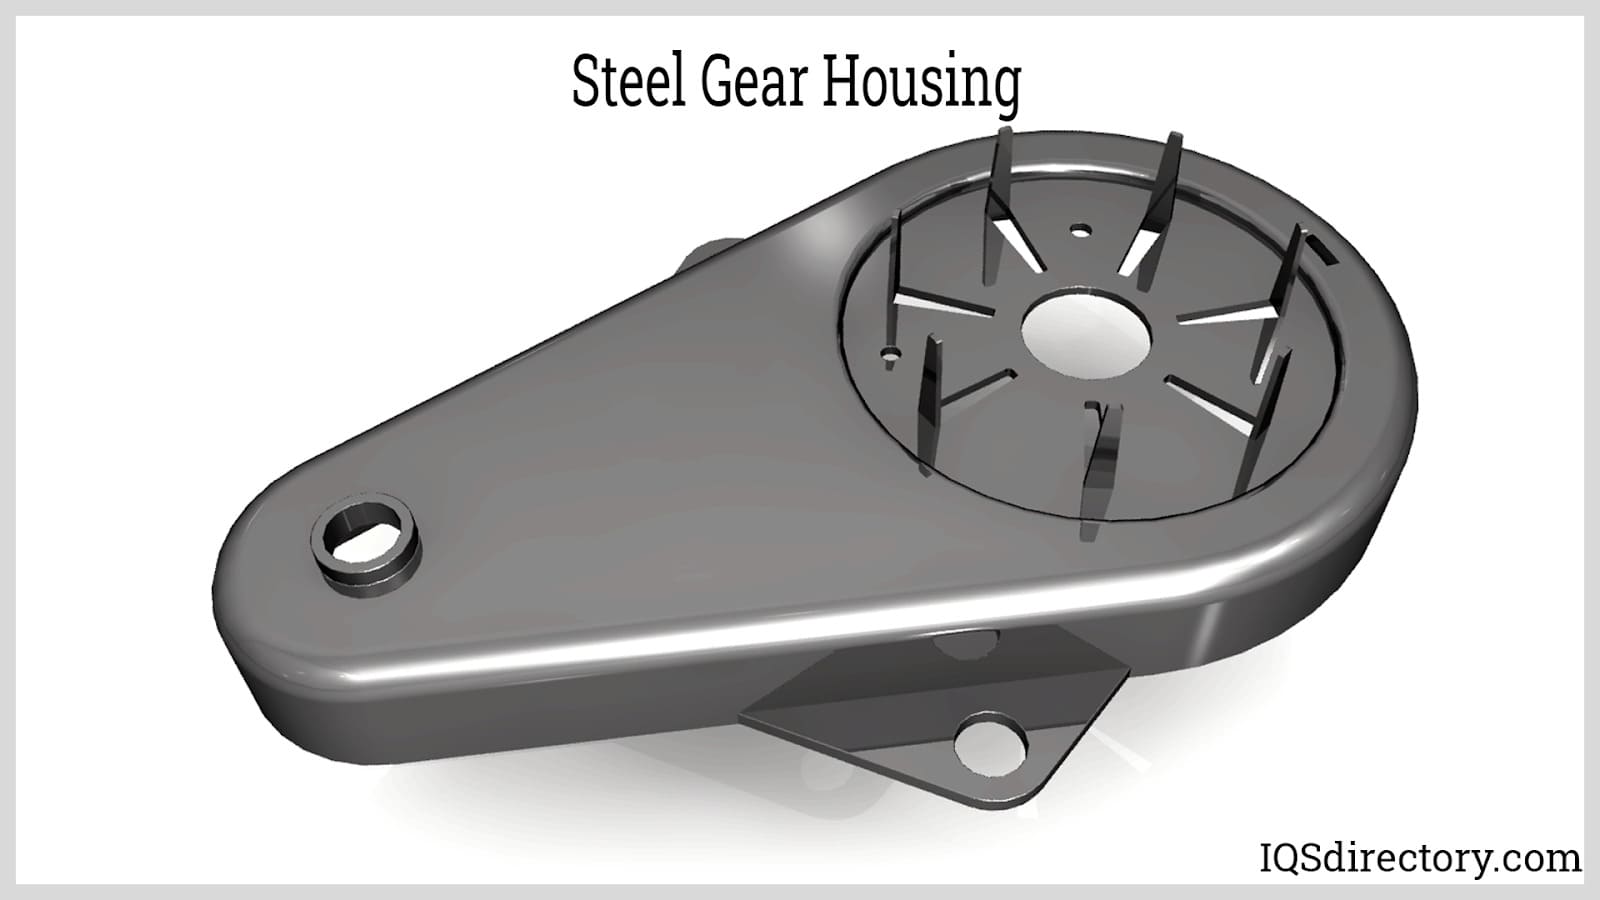 Steel Gear Housing